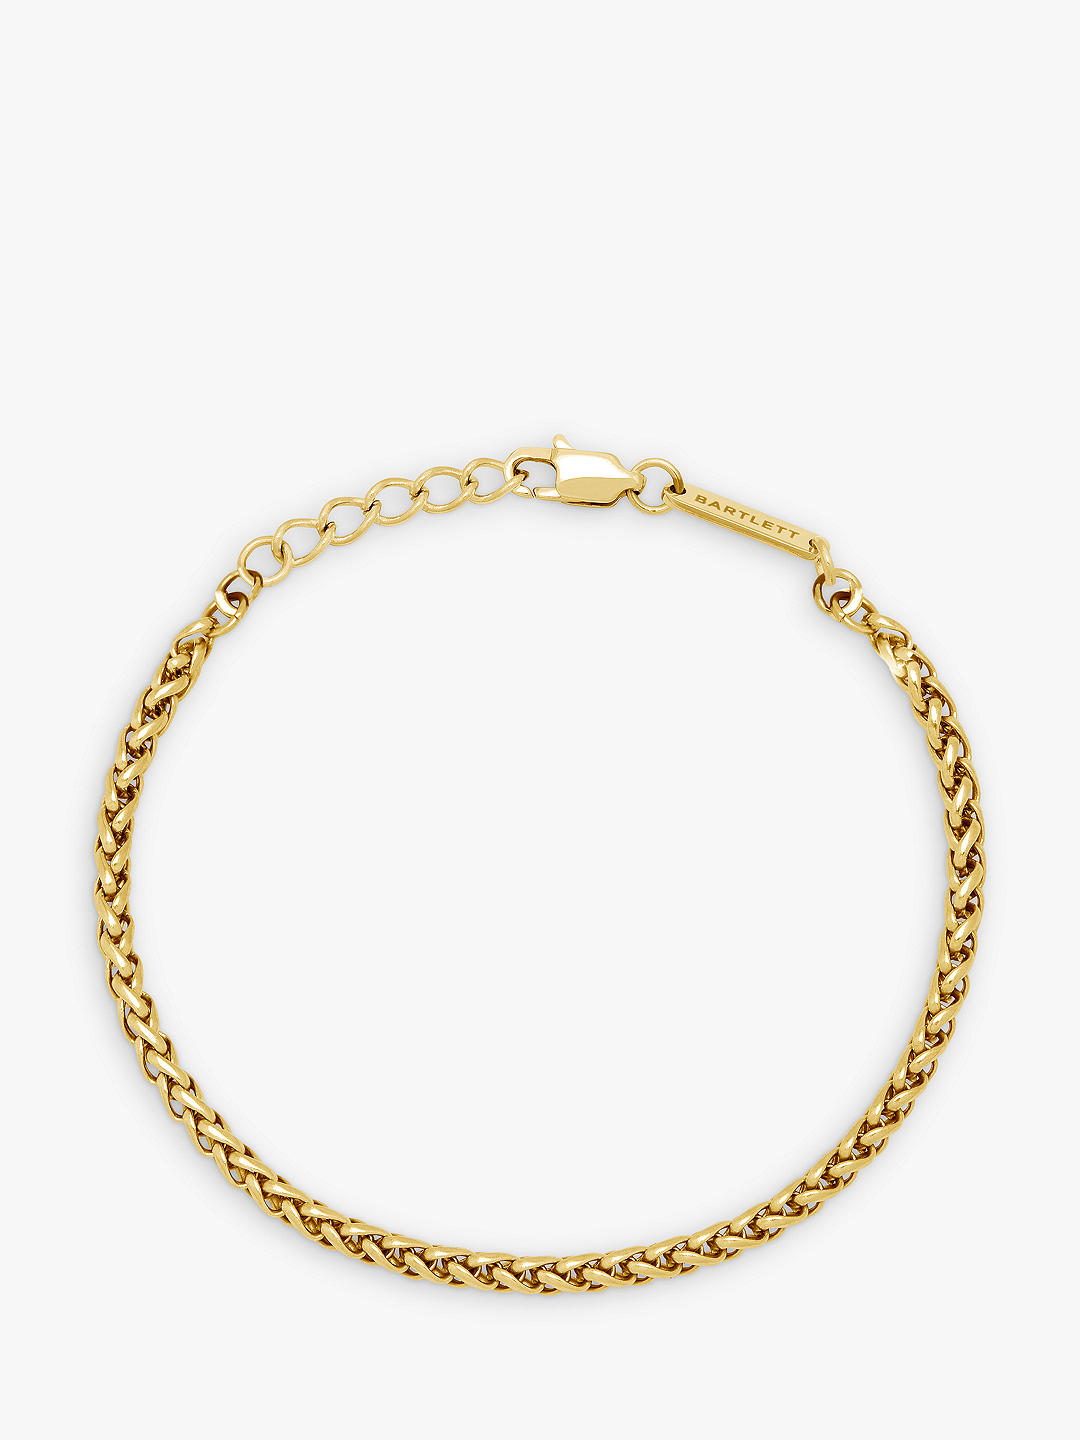 BARTLETT LONDON Men's Spiga Chain Bracelet, Gold